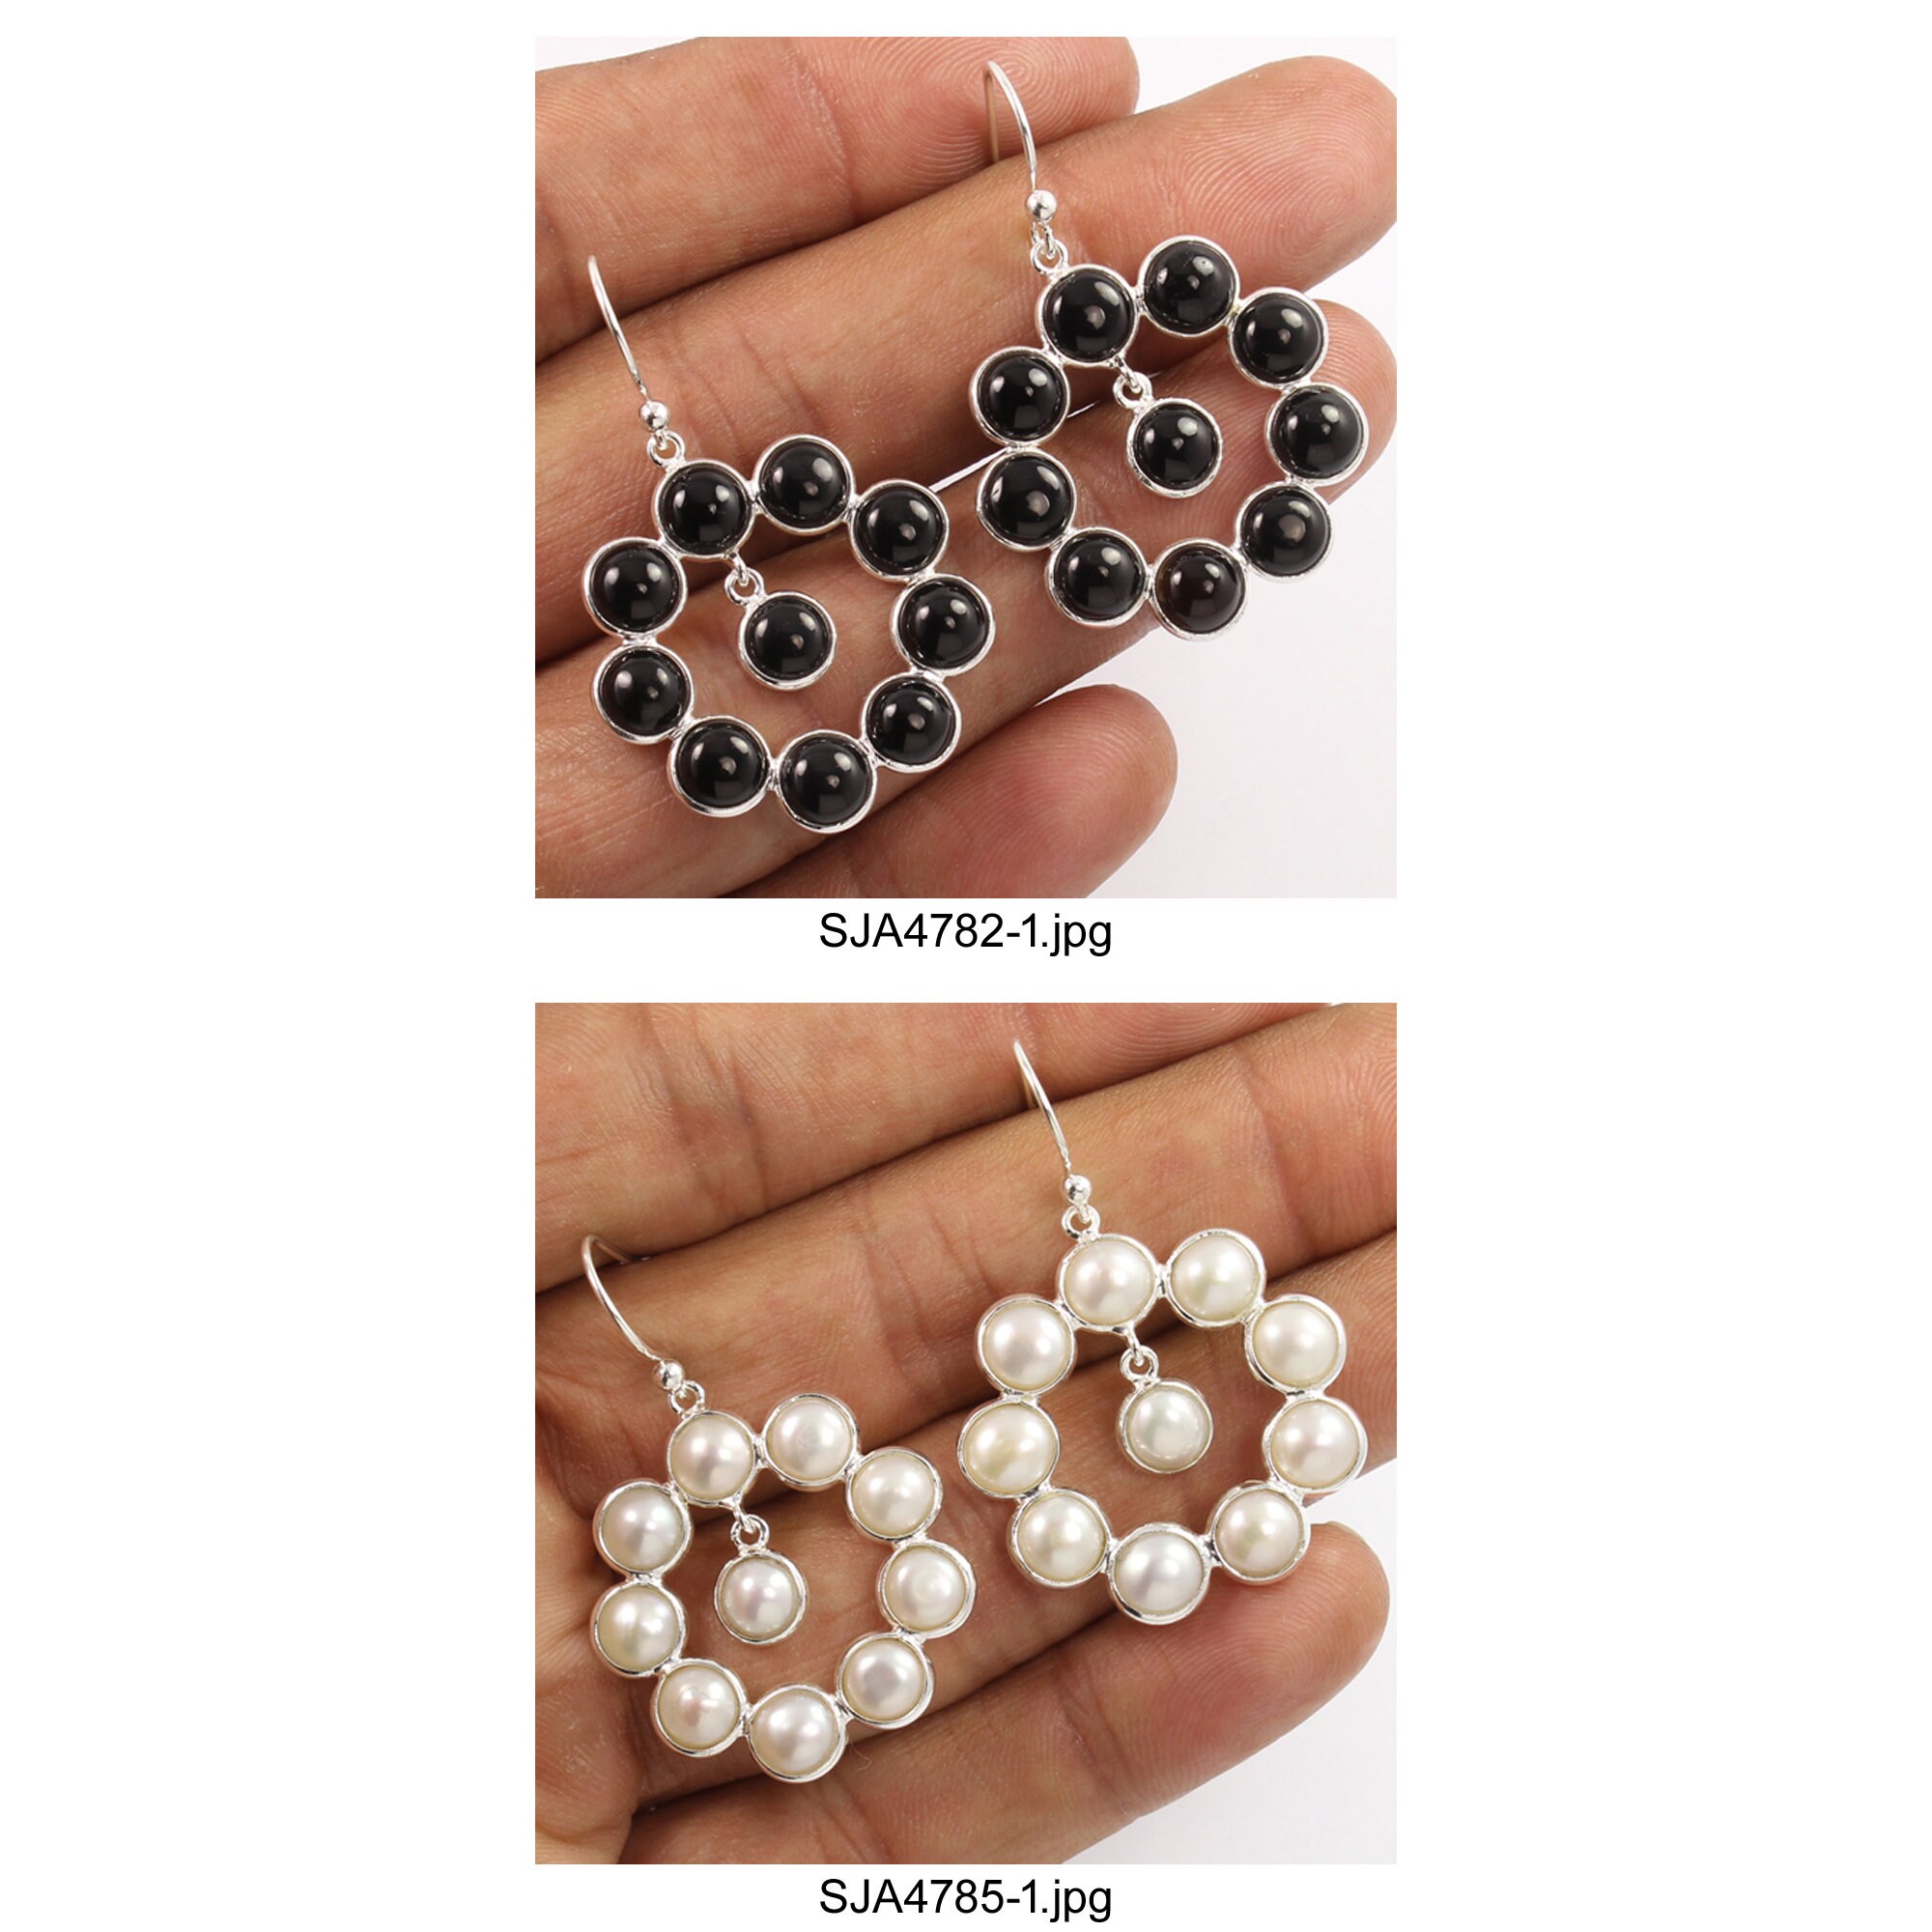 Thread,Beads Round Designer Handmade Beaded Earring at Rs 75/pair in Sambhal